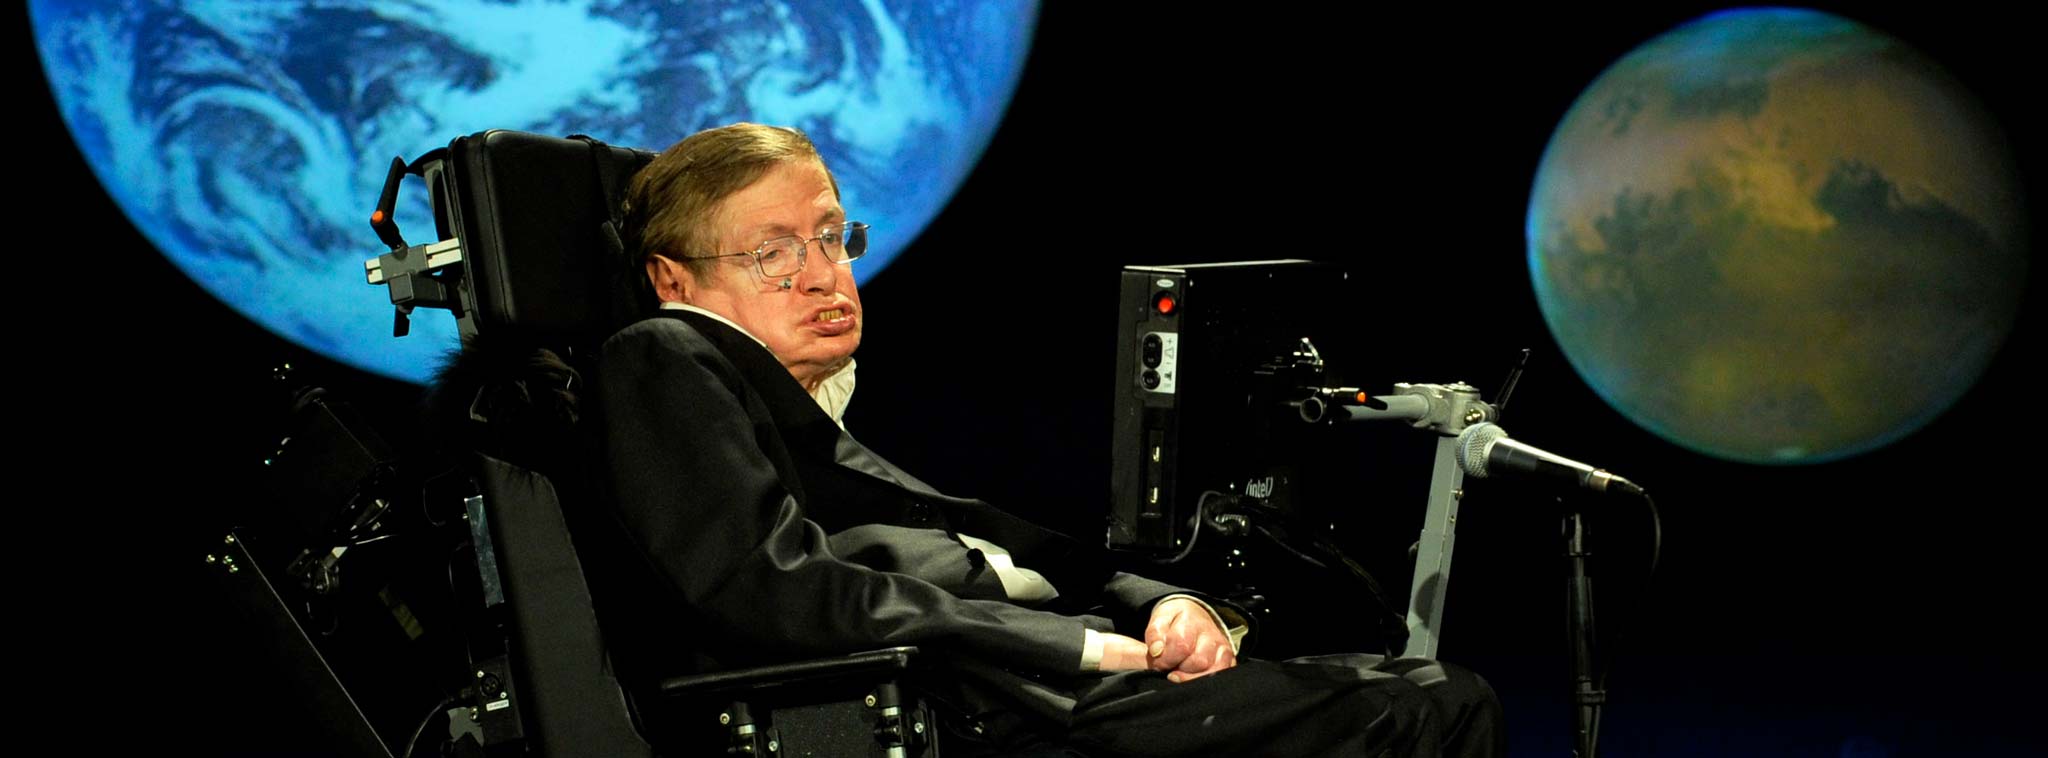 Giáo sư Stephen Hawking: "Trái Đất đã diệt vong, tới lúc phải rời đi"